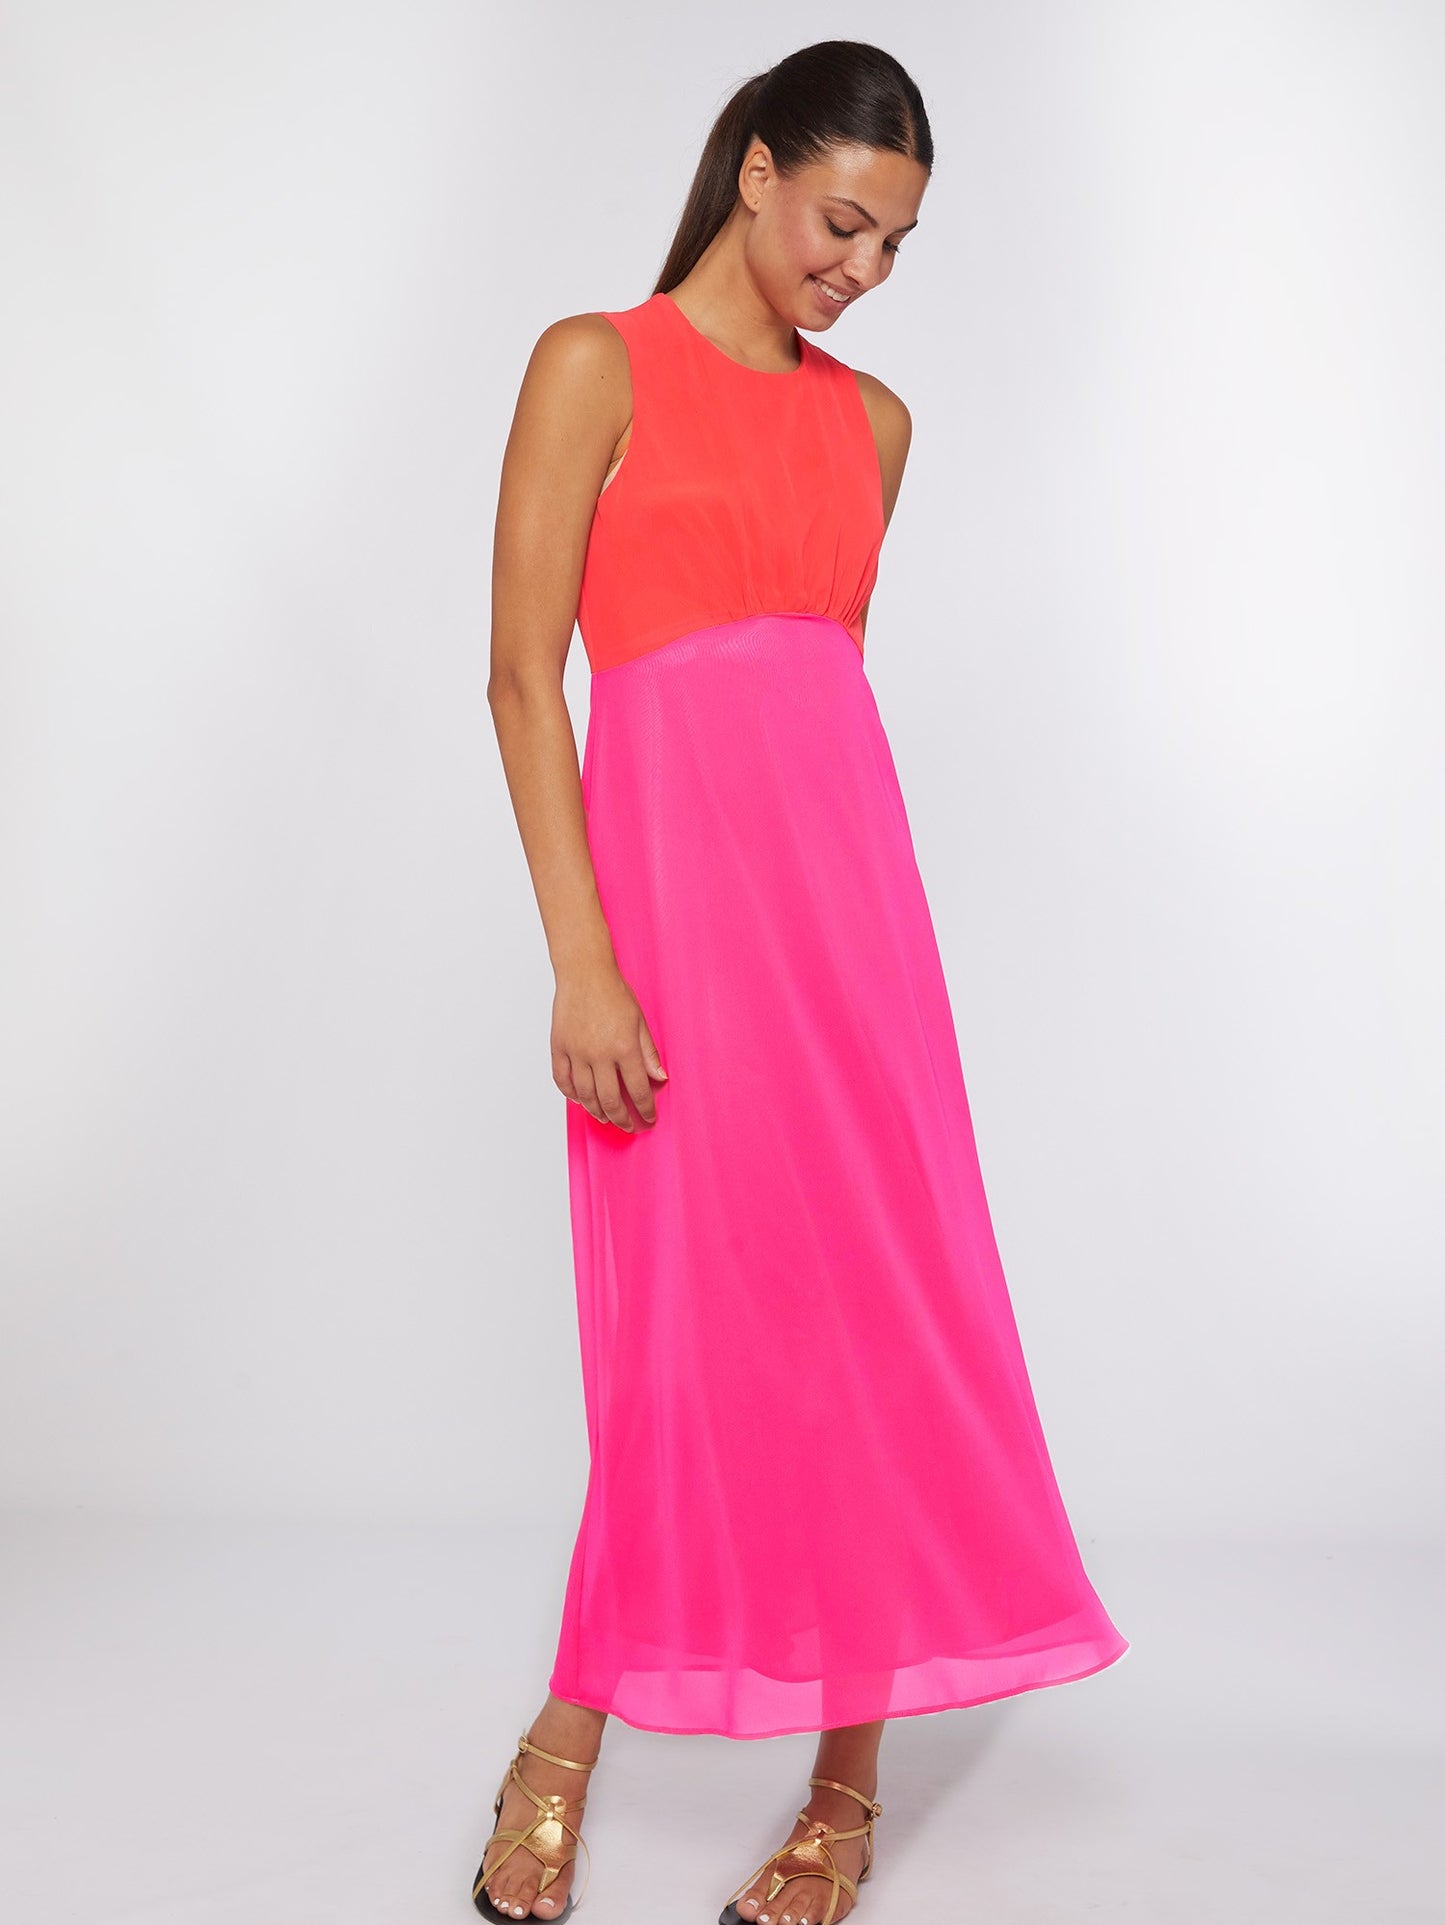 Grazia Dress in Pink Chiffon